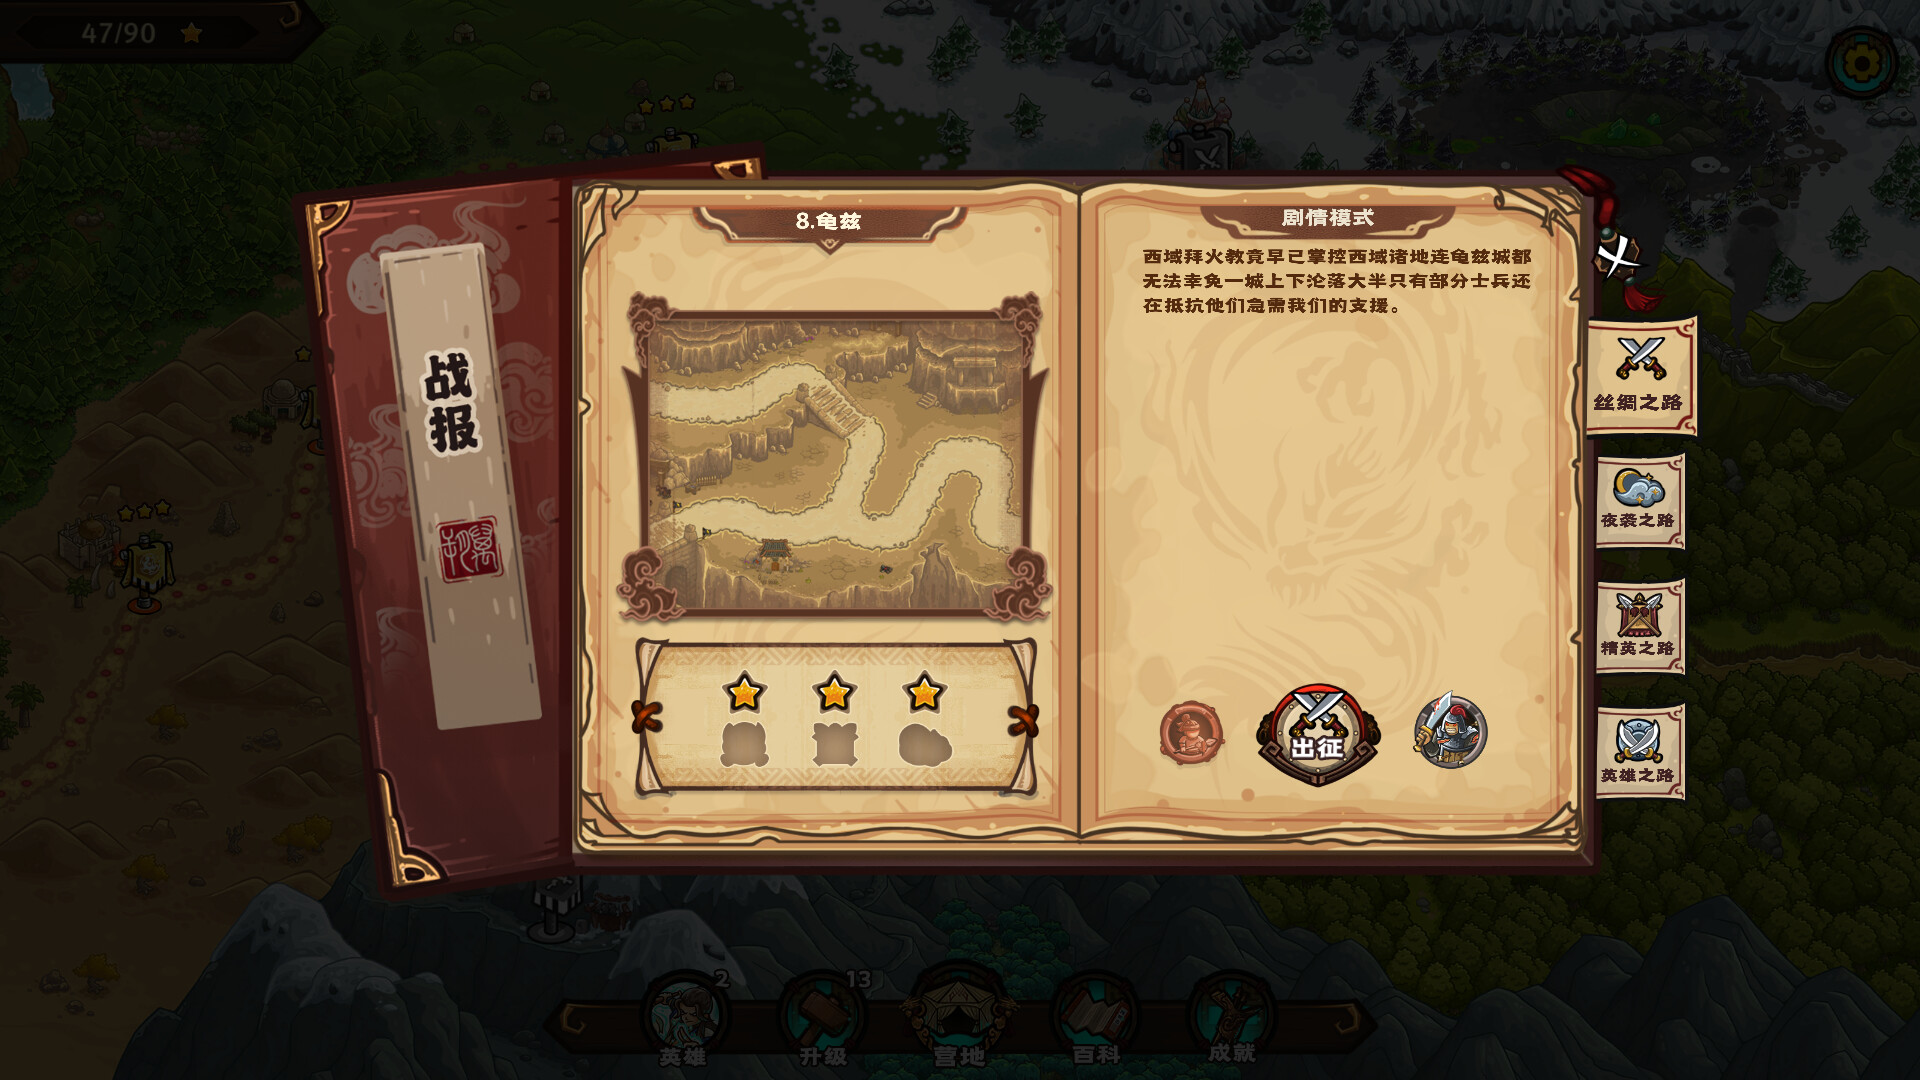 Oriental Dynasty - Silk Road defense war Steam CD Key 2.8$